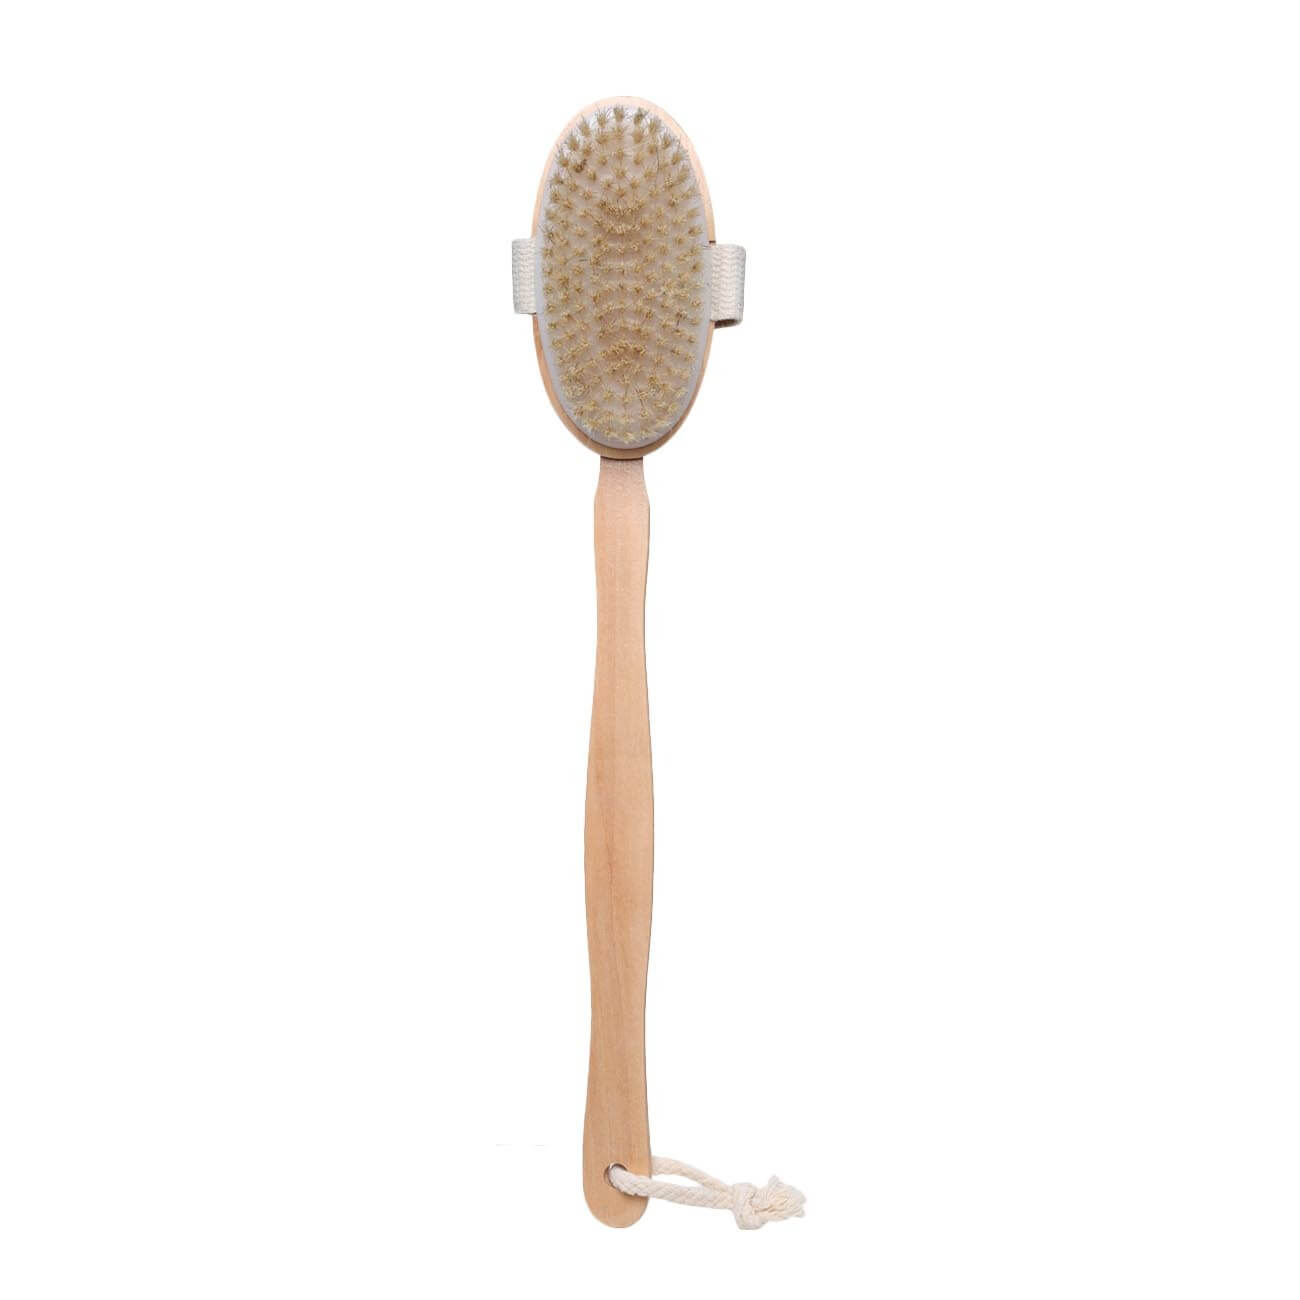 Щетка для сухого массажа, 40 см, с держателем, дерево/нейлон, Bamboo spa щетка массажная для тела доляна с ручкой натуральная щетина